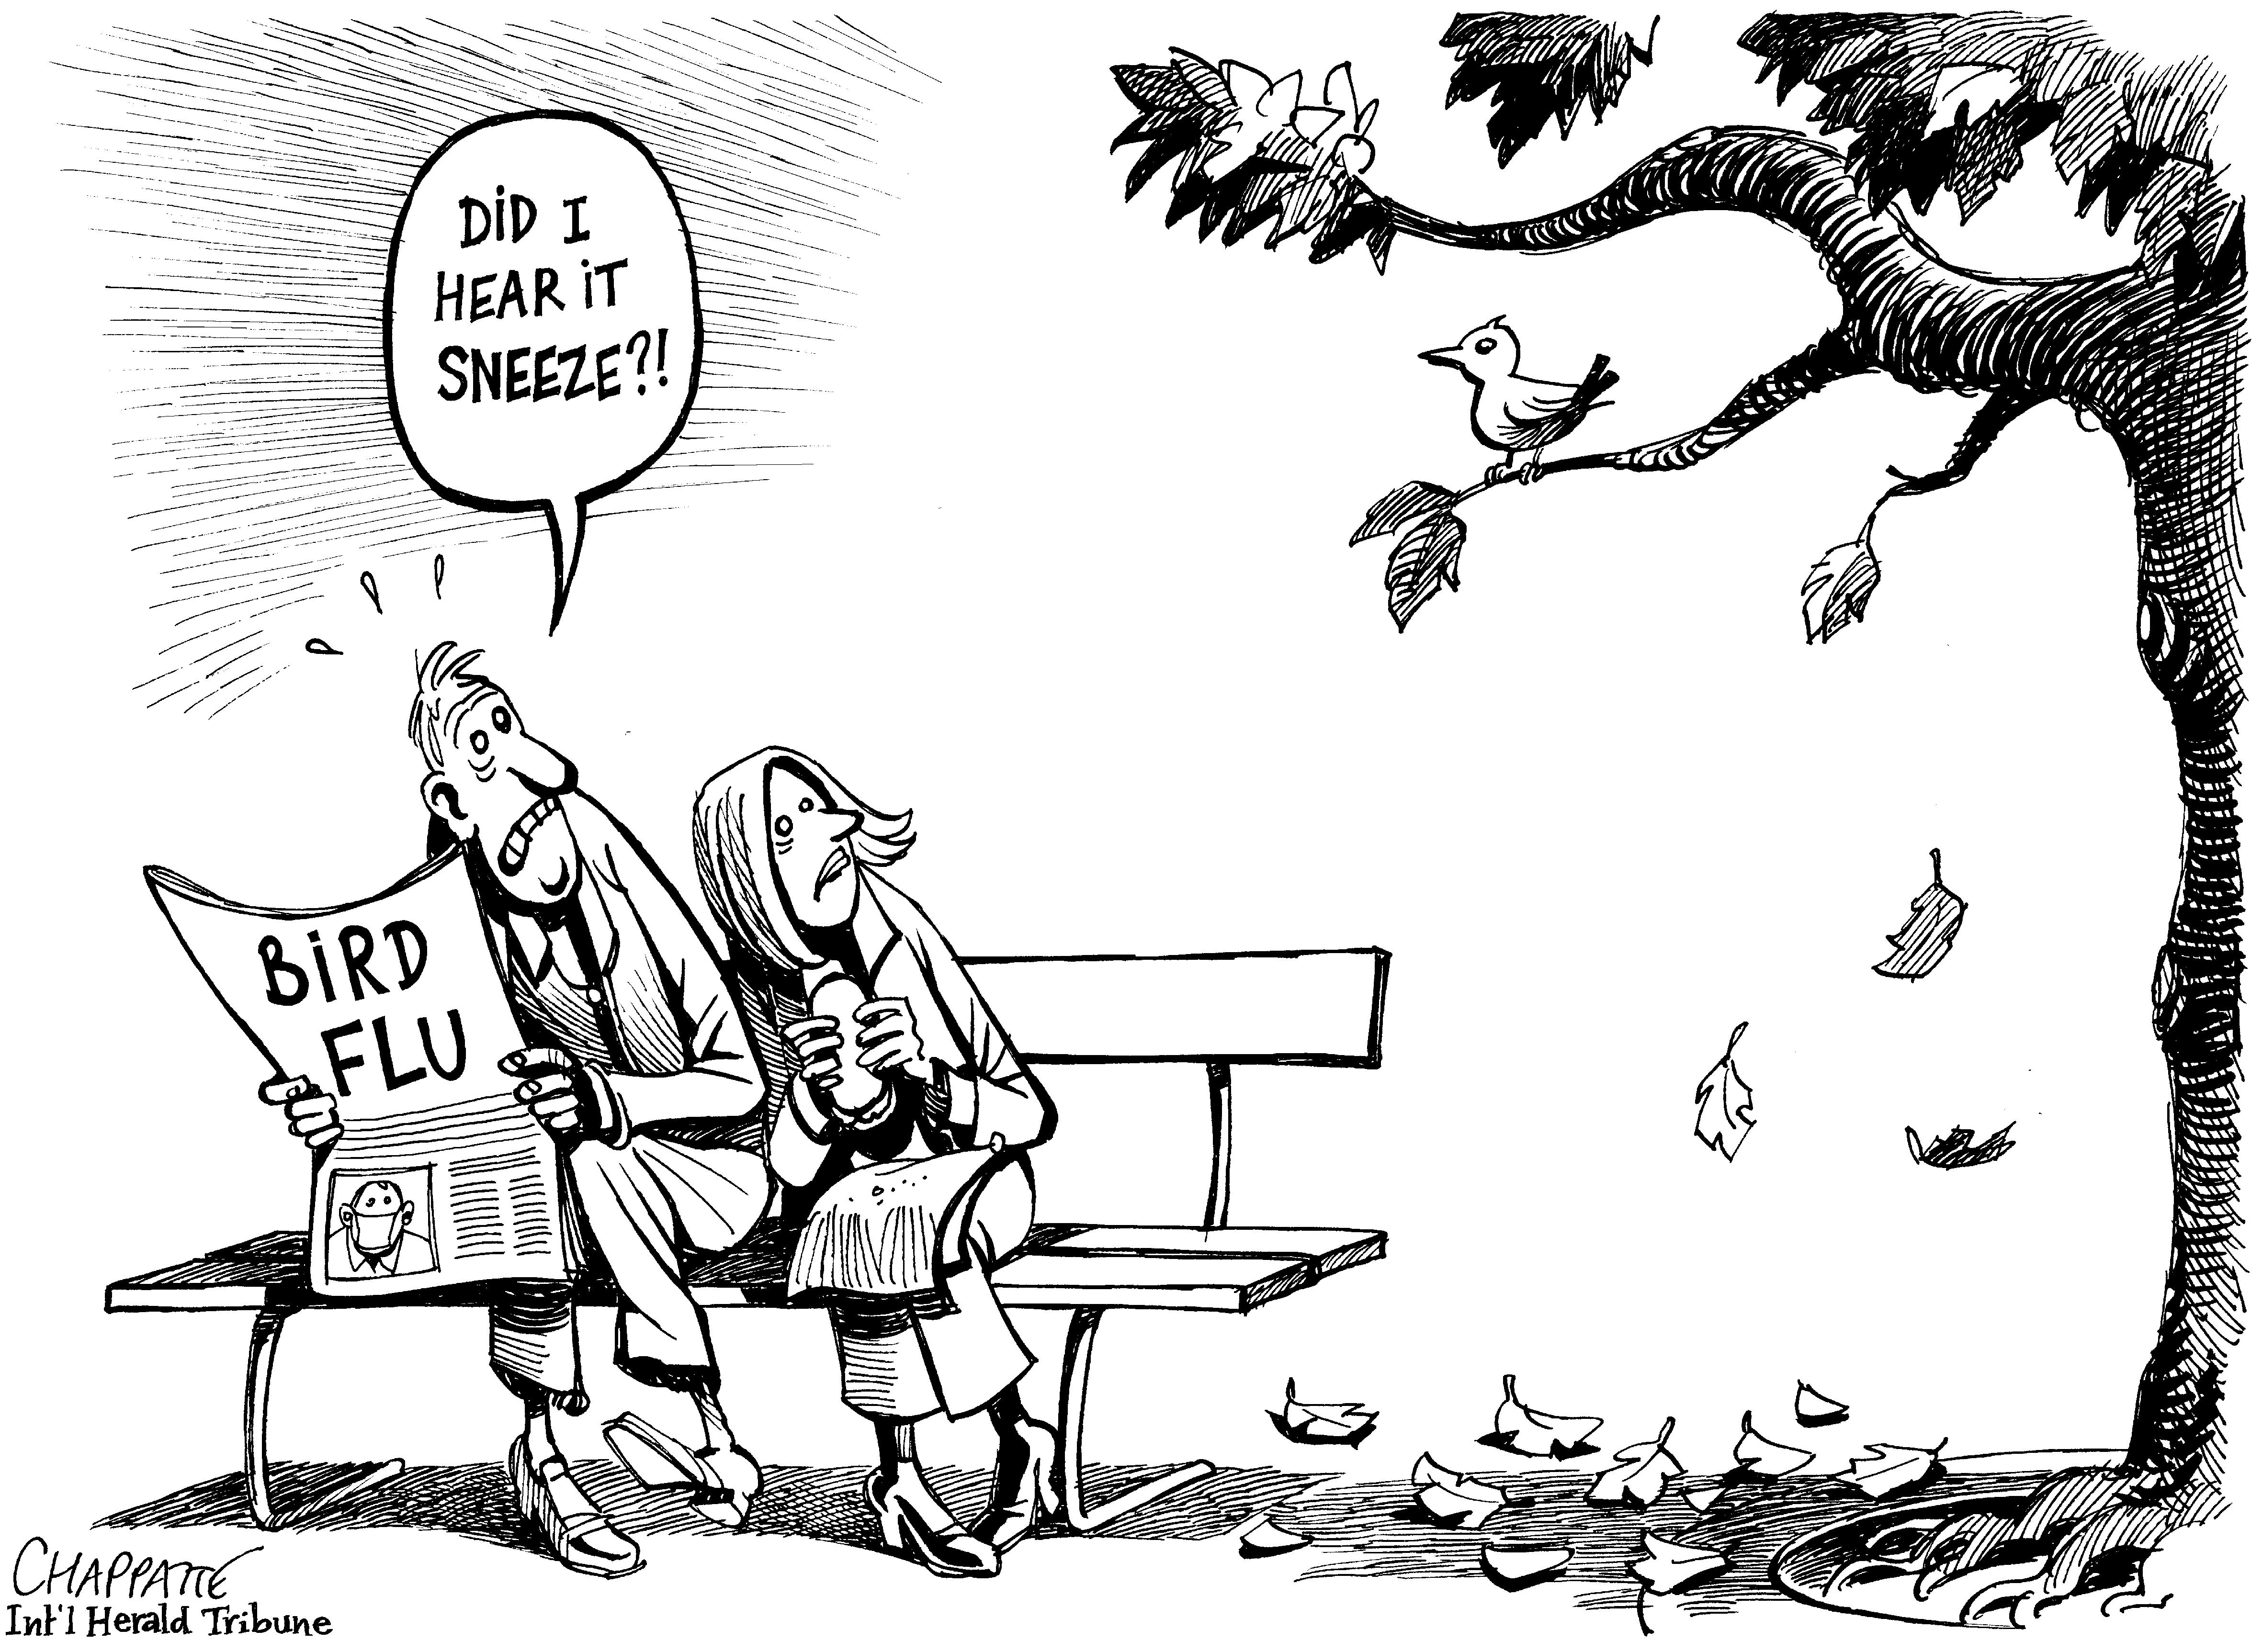 Bird flu?